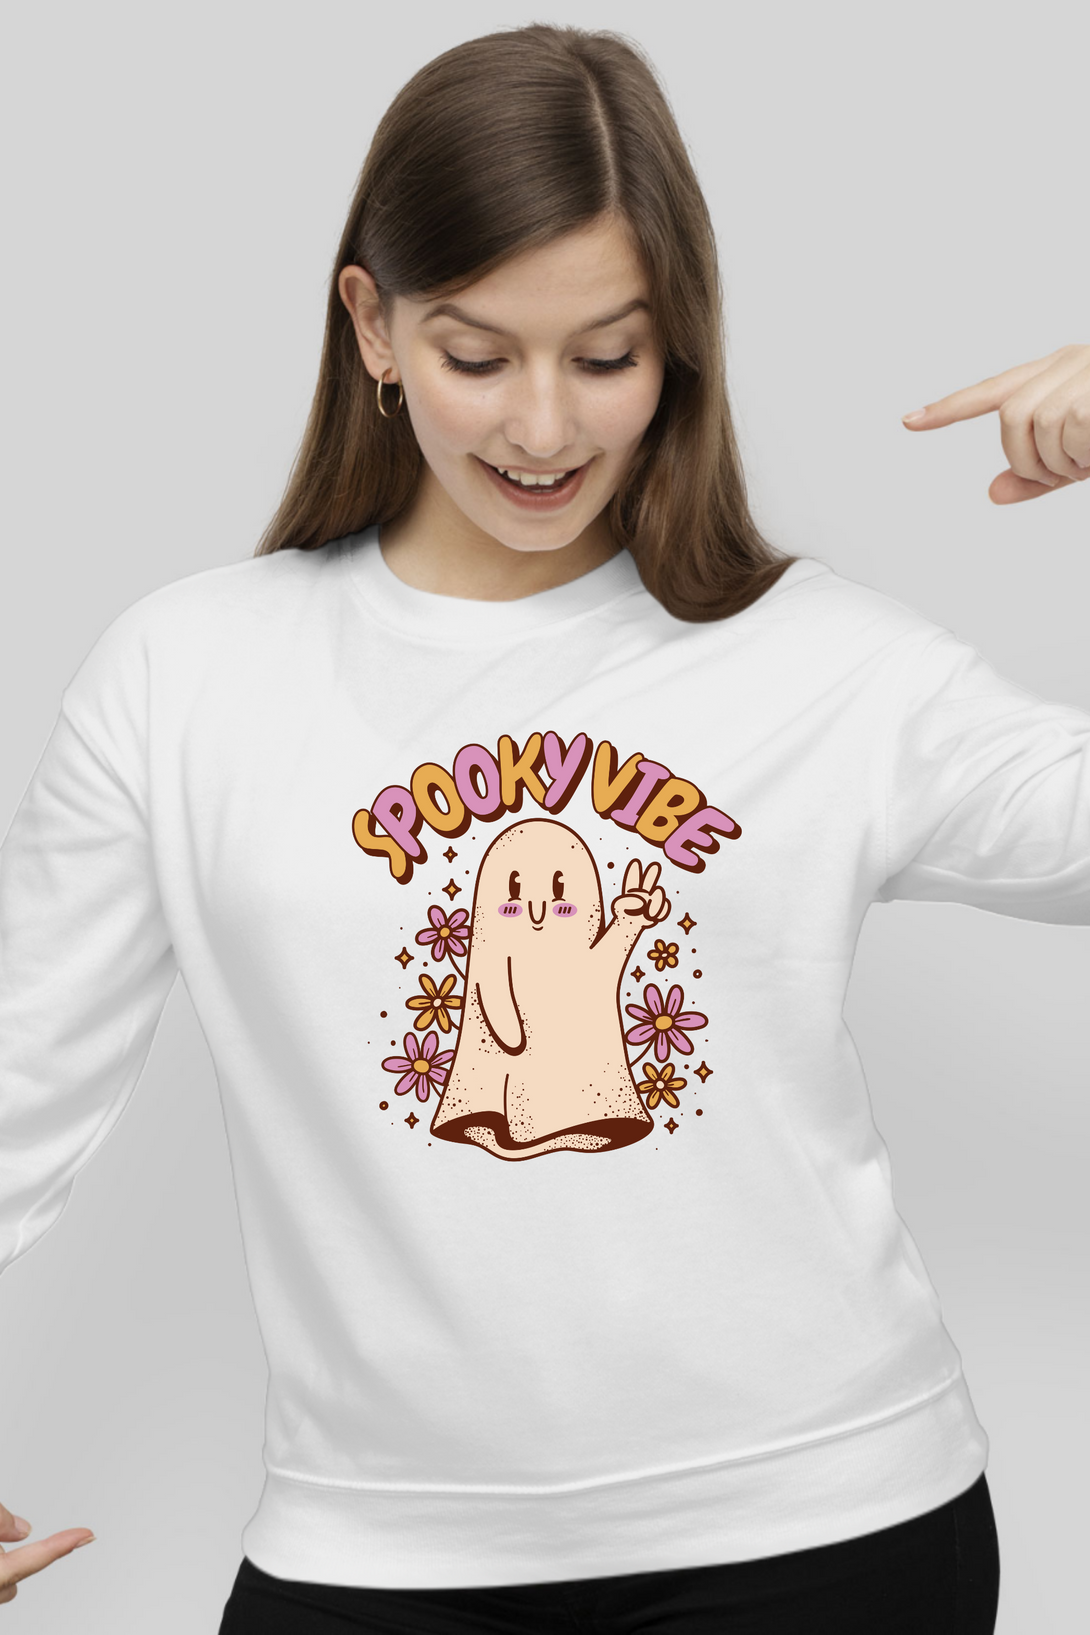 Spooky Vibe Cute Ghost Printed Sweatshirt For Women - WowWaves